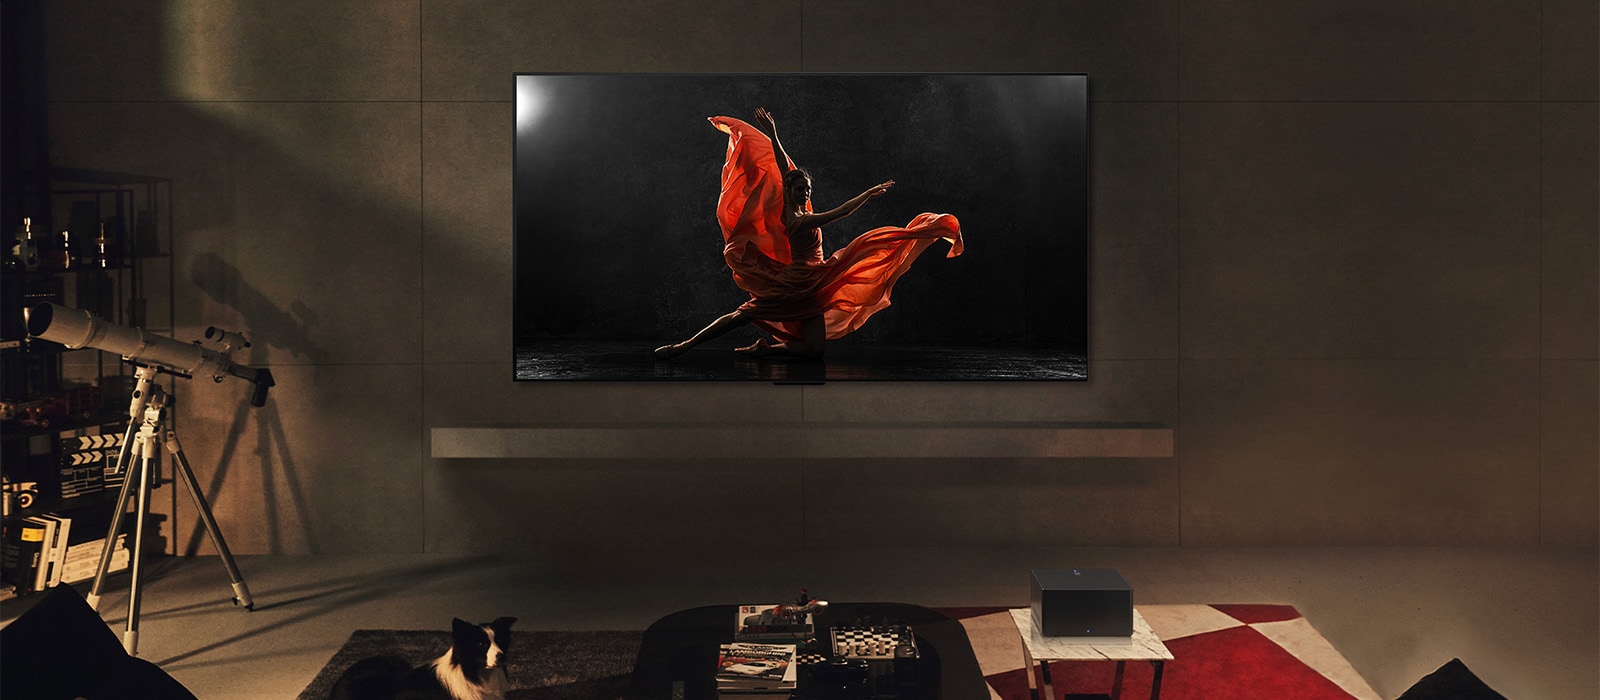 Televizor LG SIGNATURE OLED M4 i LG Soundbar u modernom stambenom prostoru noću. Slika osobe koja pleše na tamnoj sceni prikazuje se s idealnom razinom osvjetljenja.